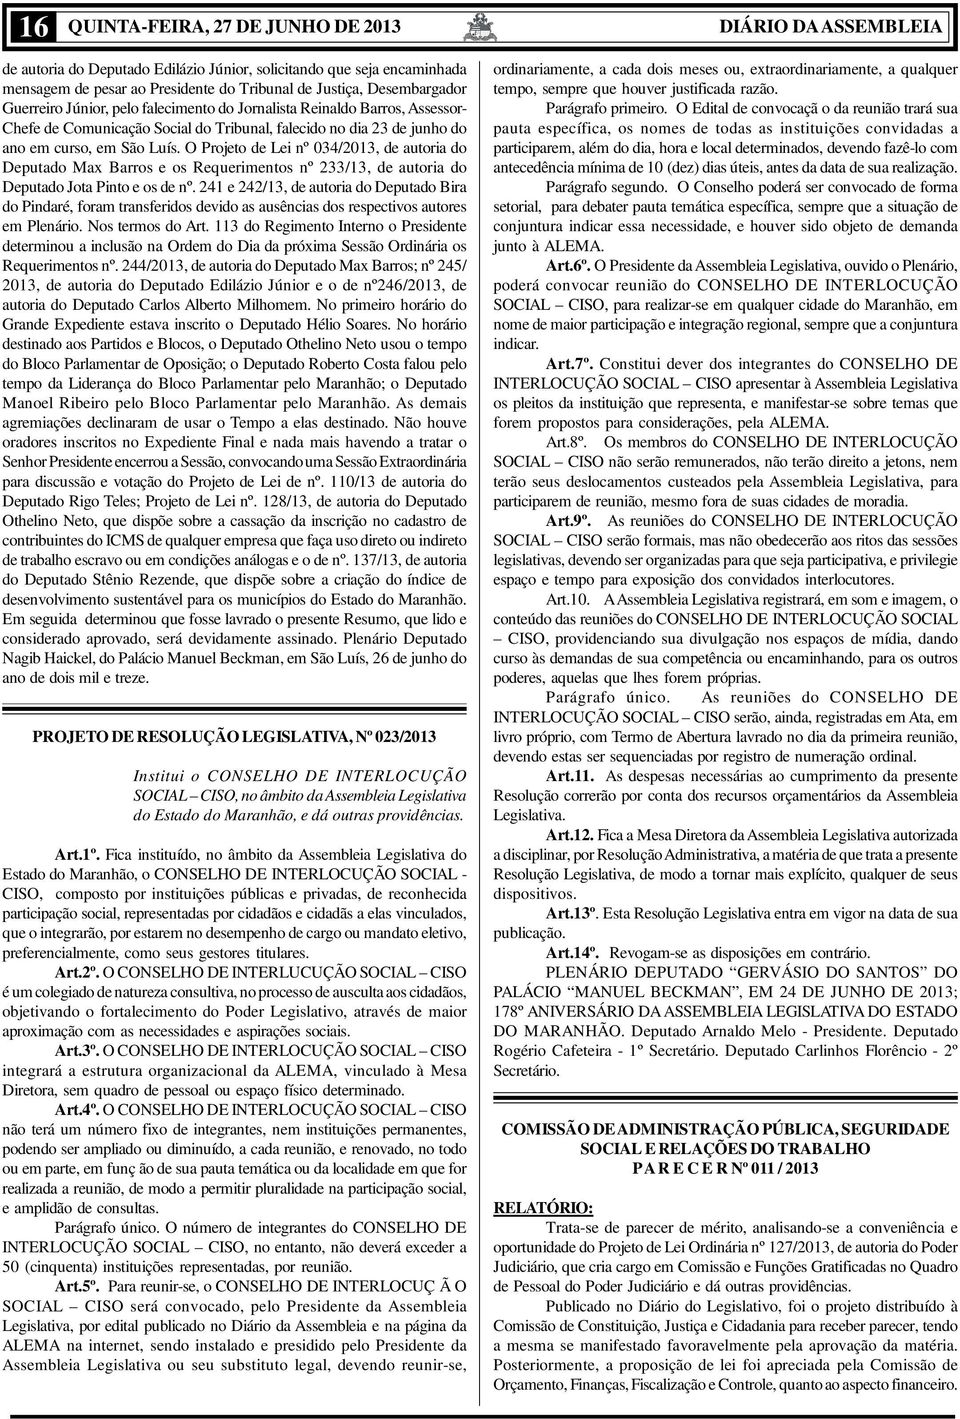 O Projeto de Lei nº 034/2013, de autoria do Deputado Max Barros e os Requerimentos nº 233/13, de autoria do Deputado Jota Pinto e os de nº.